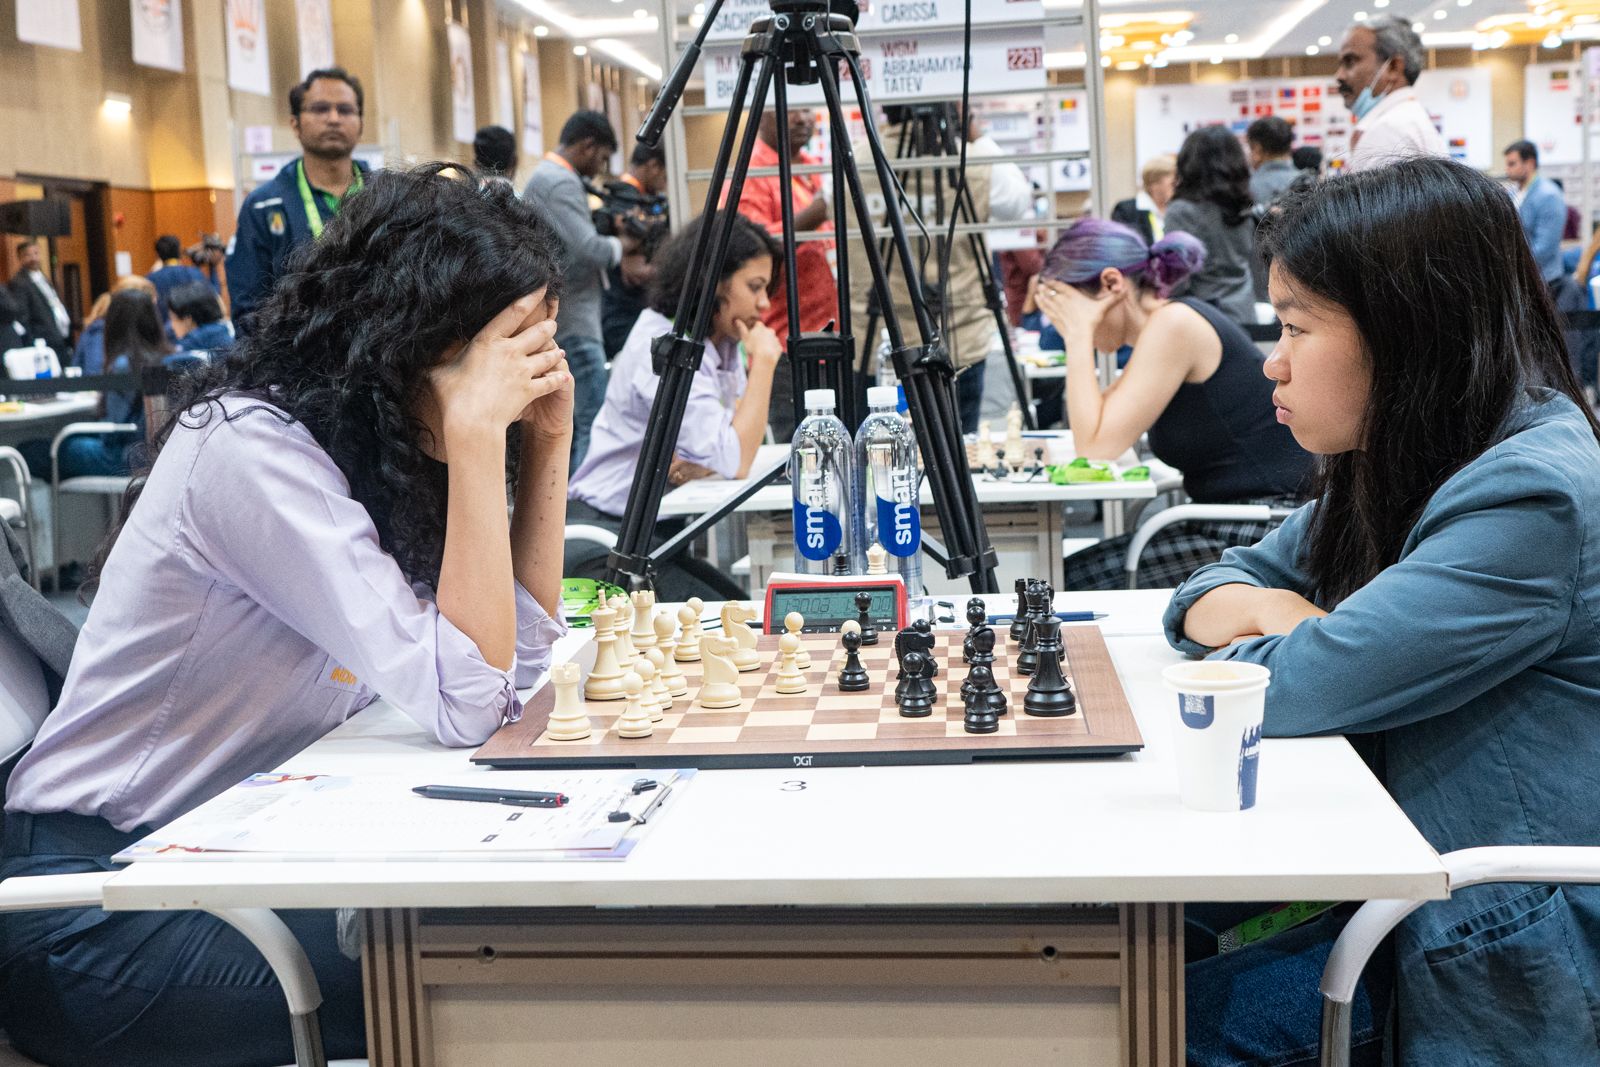 Vietnam women enter chess Olympiad top 20 - VnExpress International